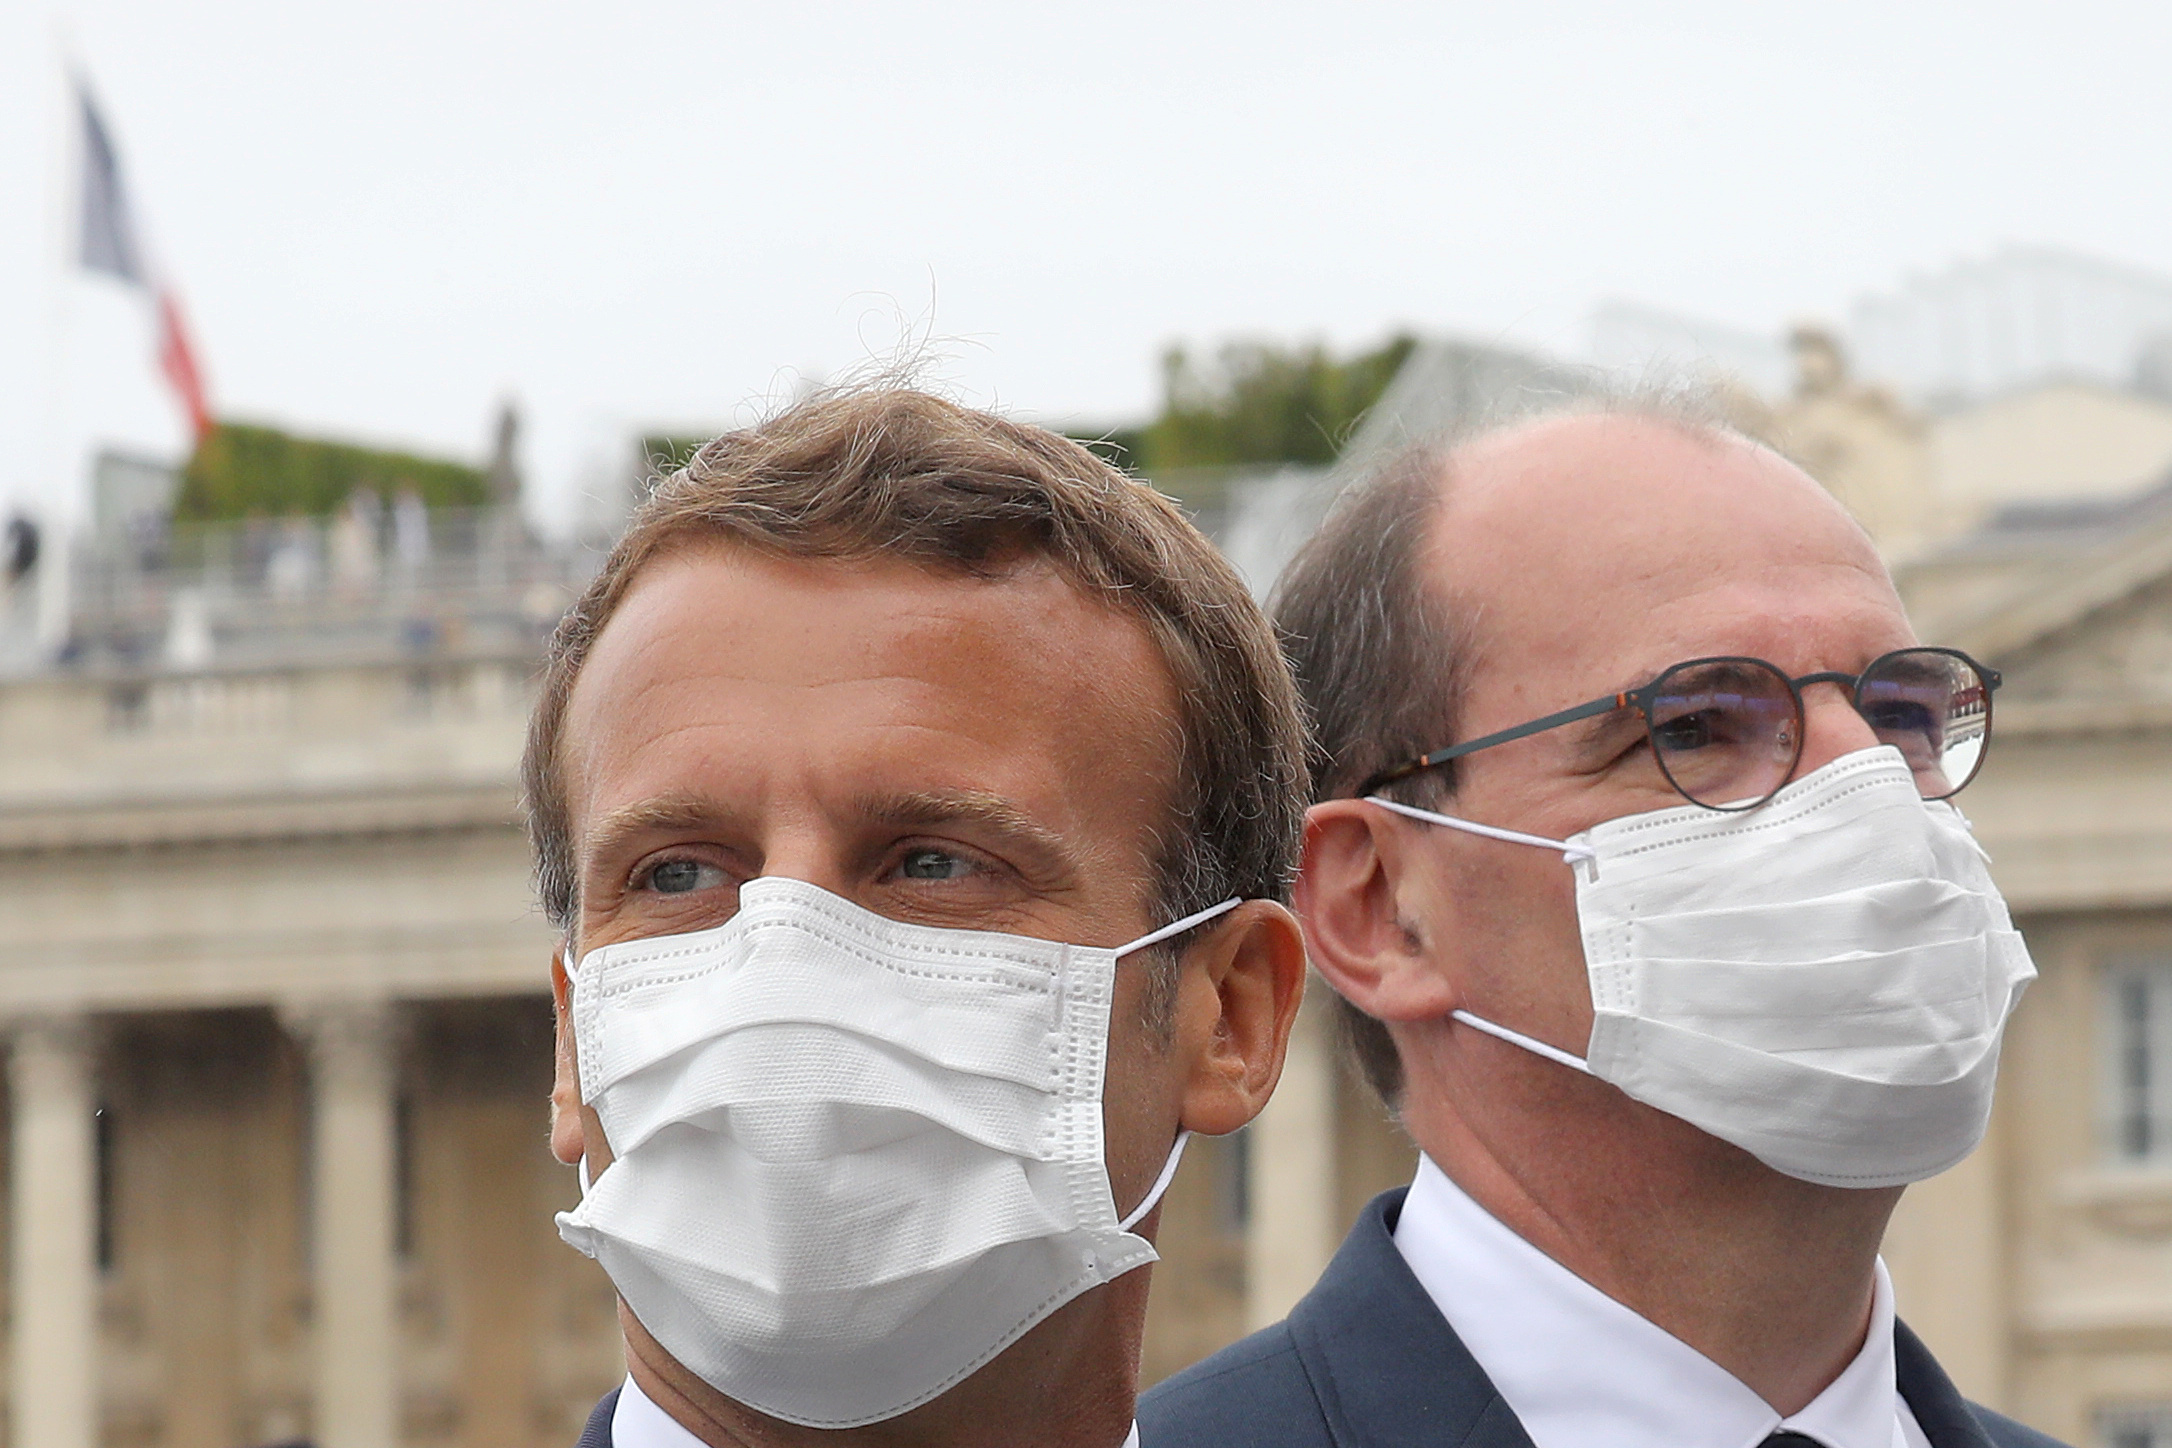 Le masque obligatoire dans les lieux publics clos le 1er août, dit Macron